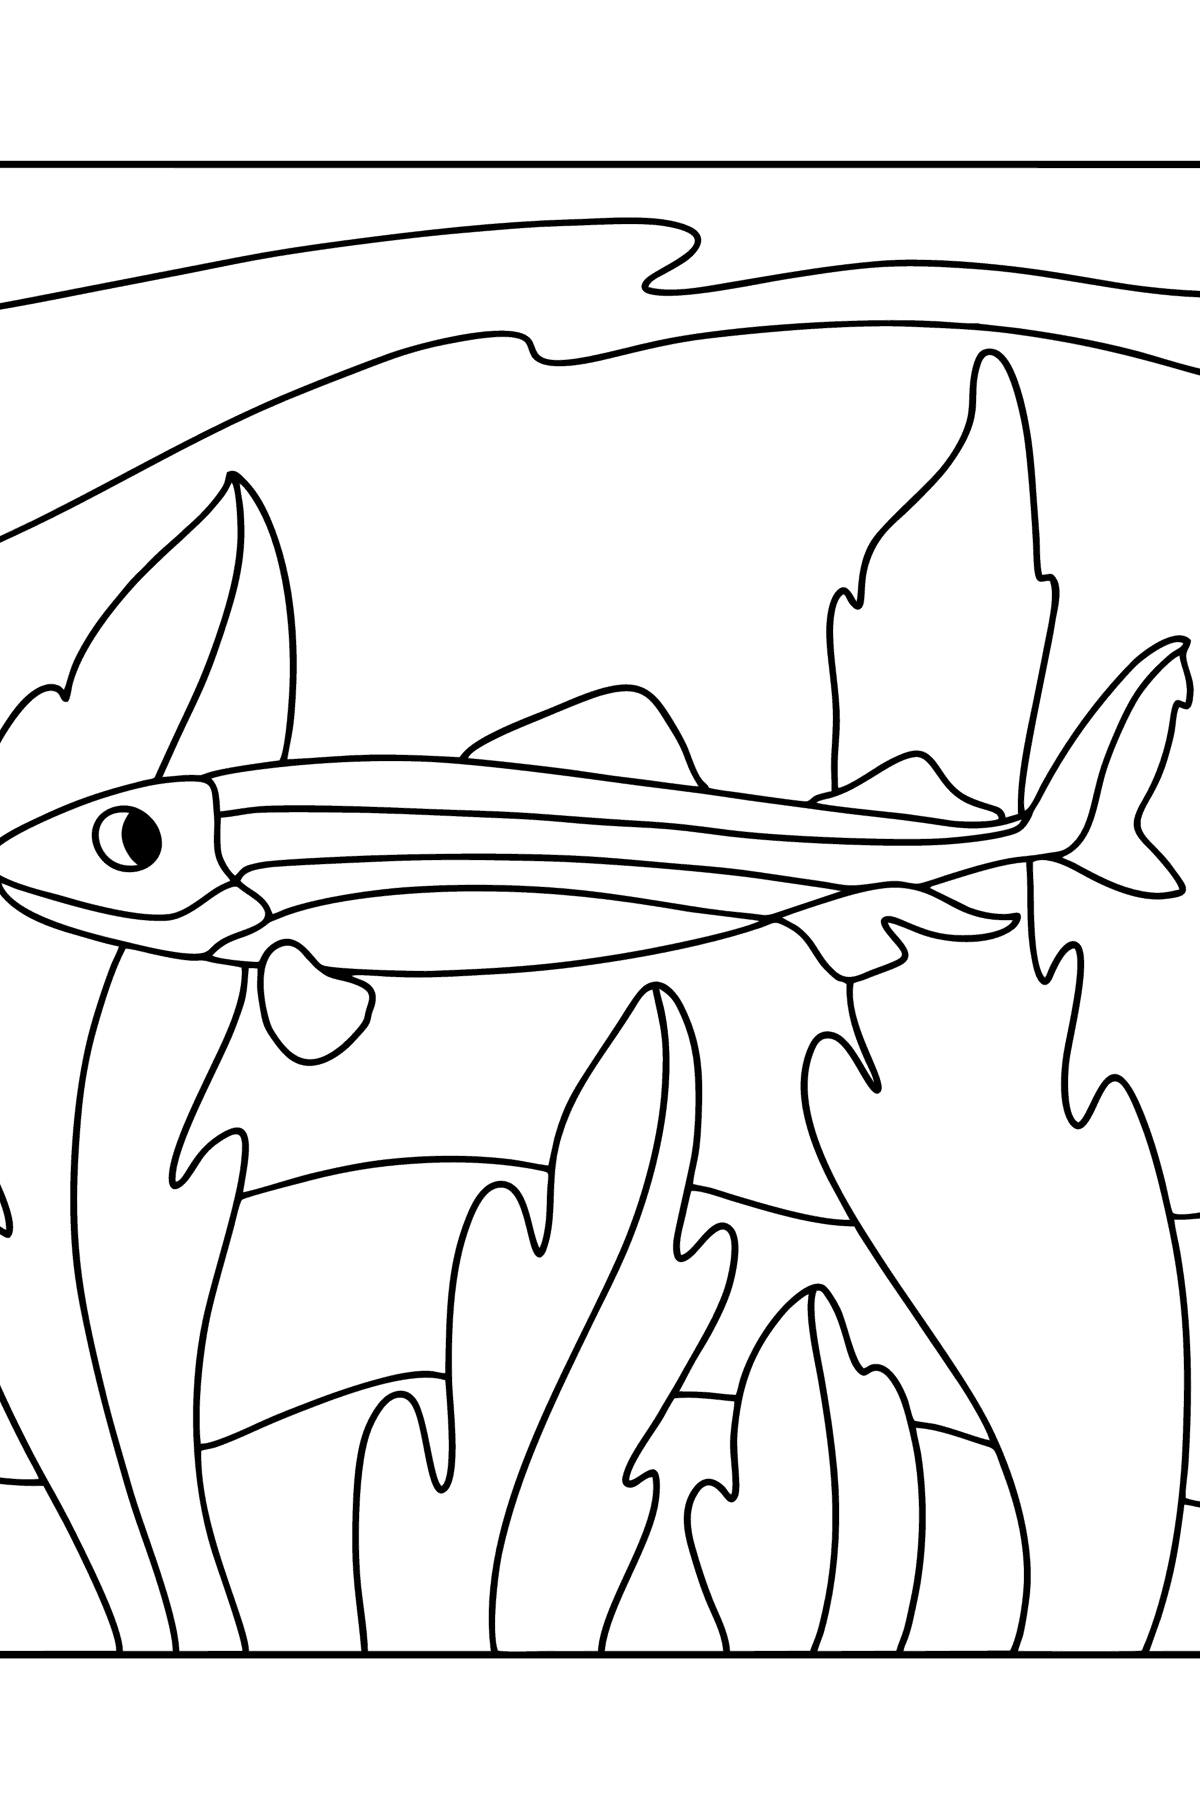 Desen de colorat rechin crocodil - Desene de colorat pentru copii